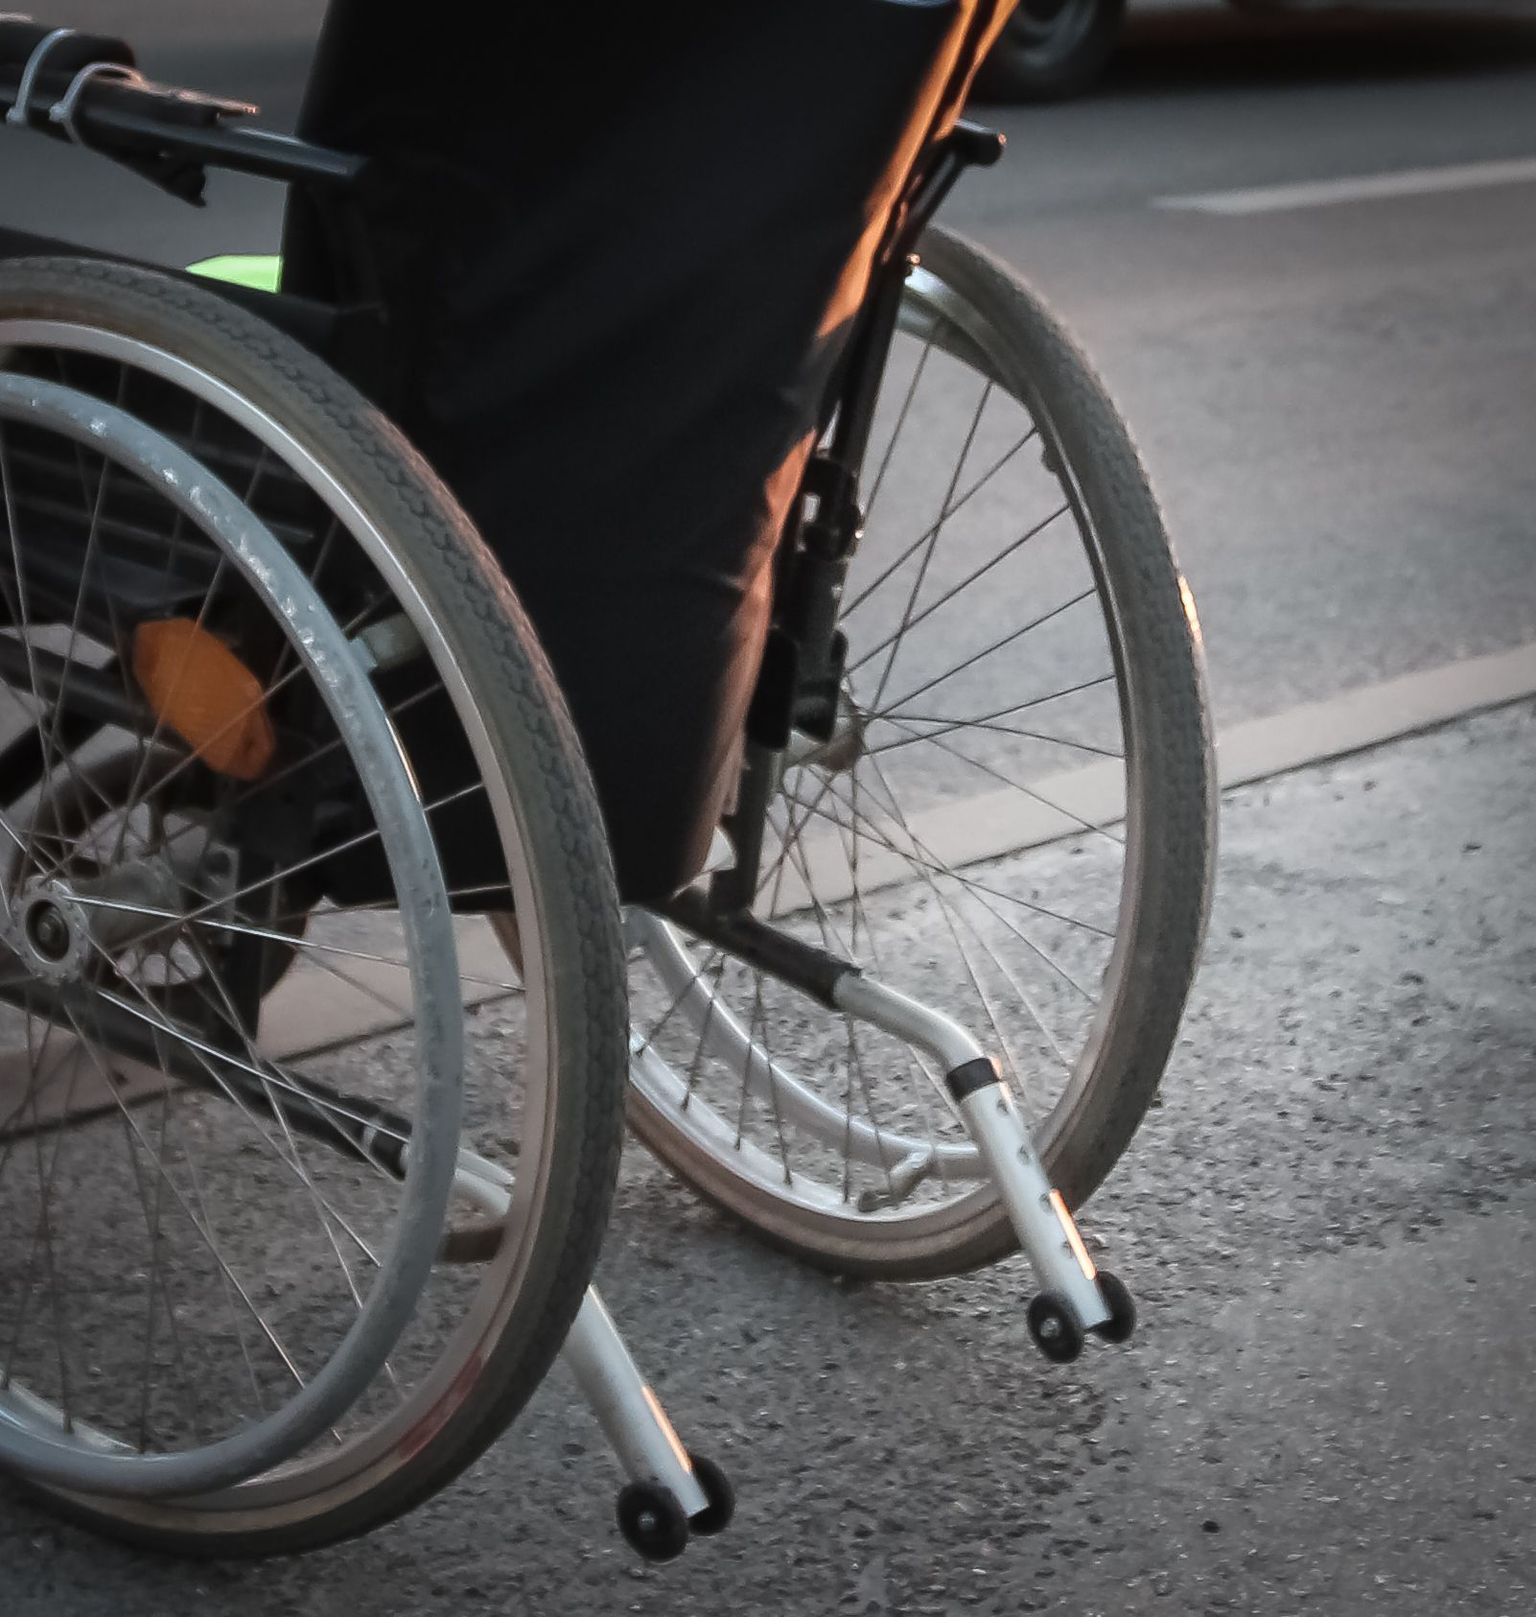 Инвалидная коляска. Иллюстративное фото.